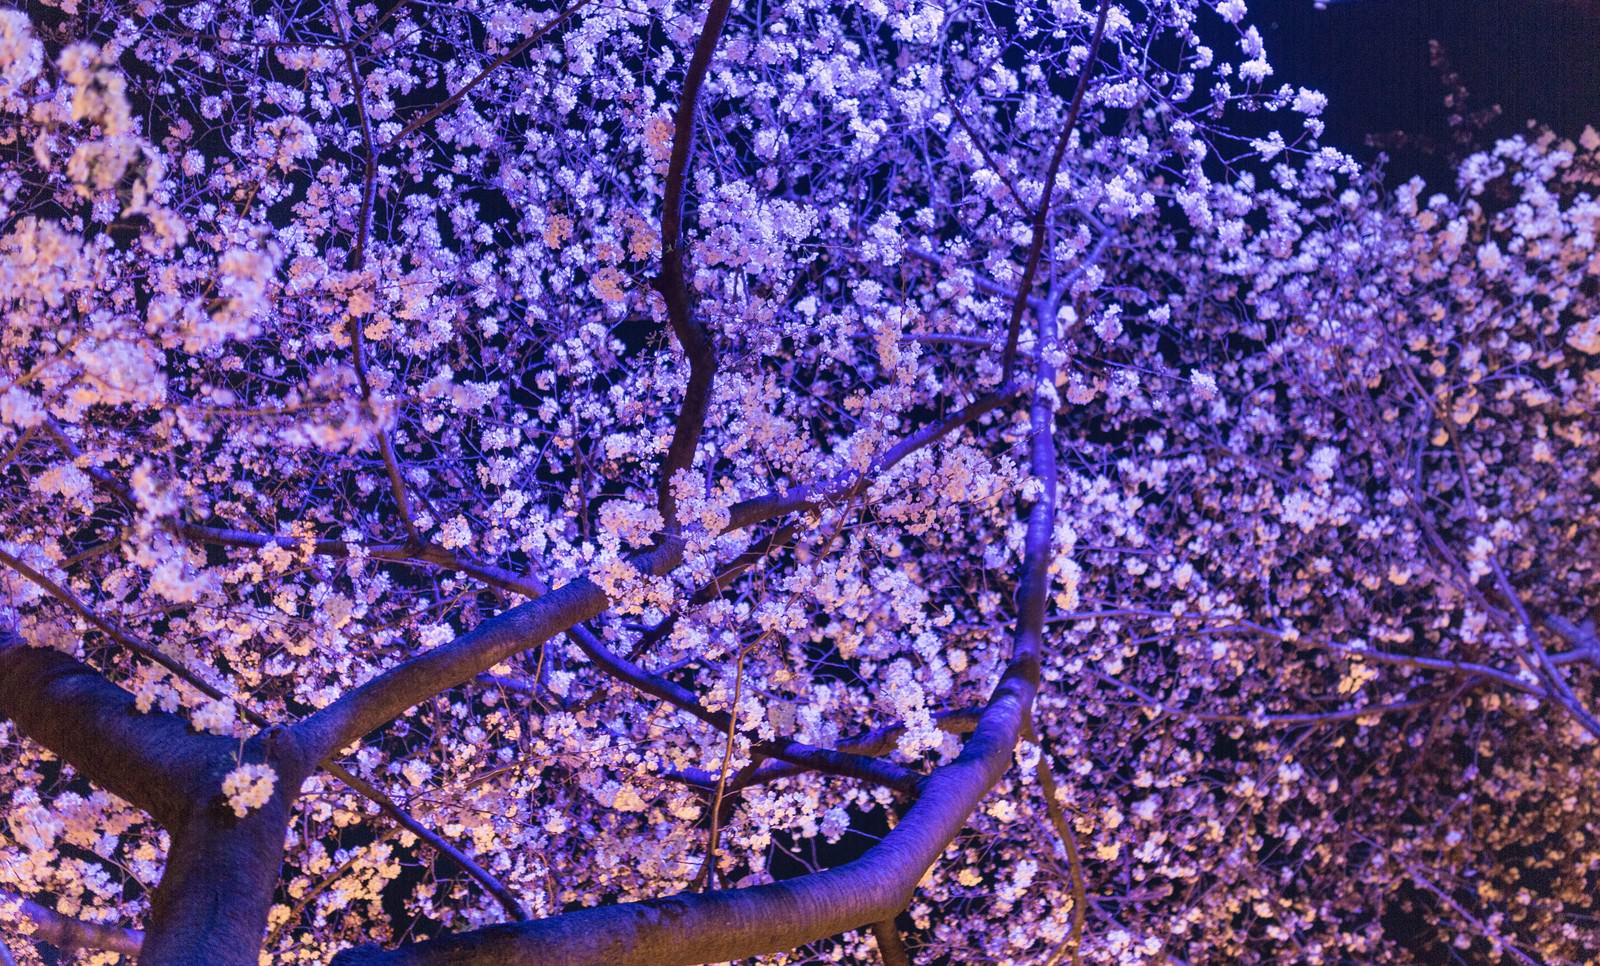 ライトアップした夜桜の写真を無料ダウンロード フリー素材 ぱくたそ